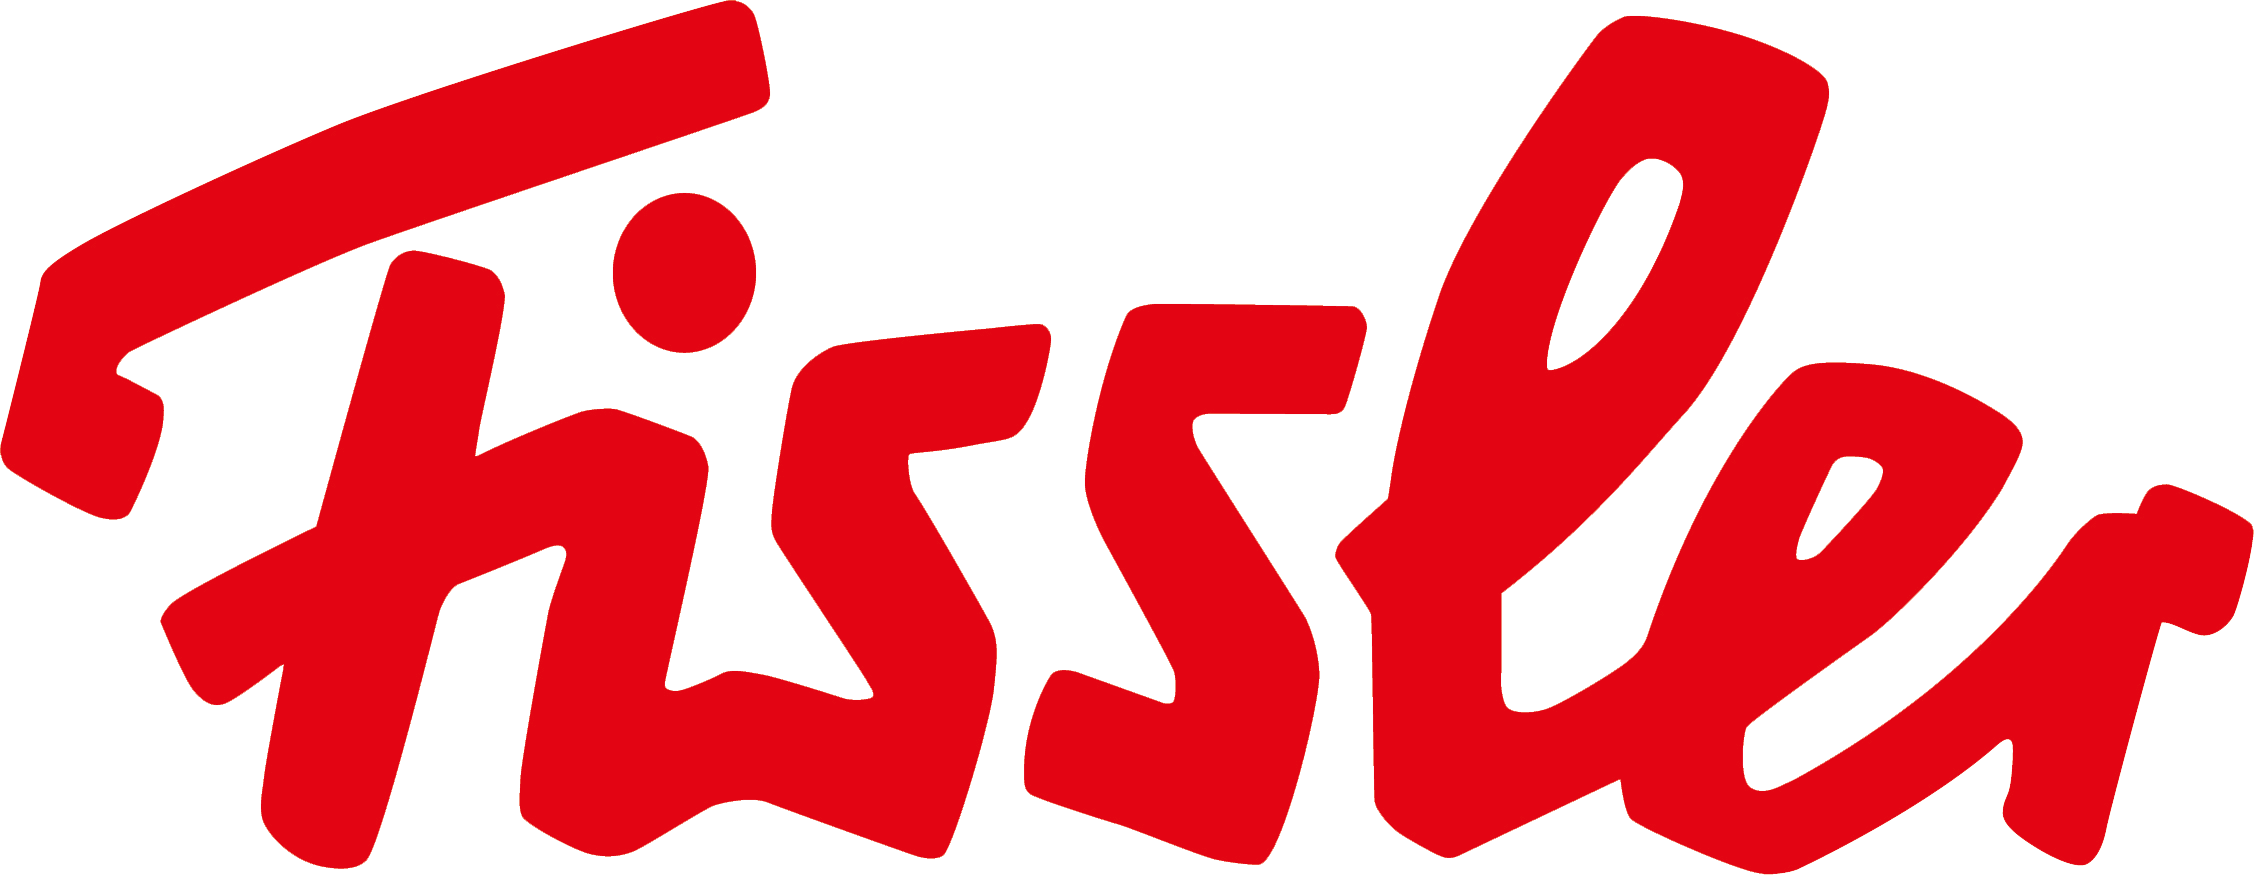 Fissler-Russia